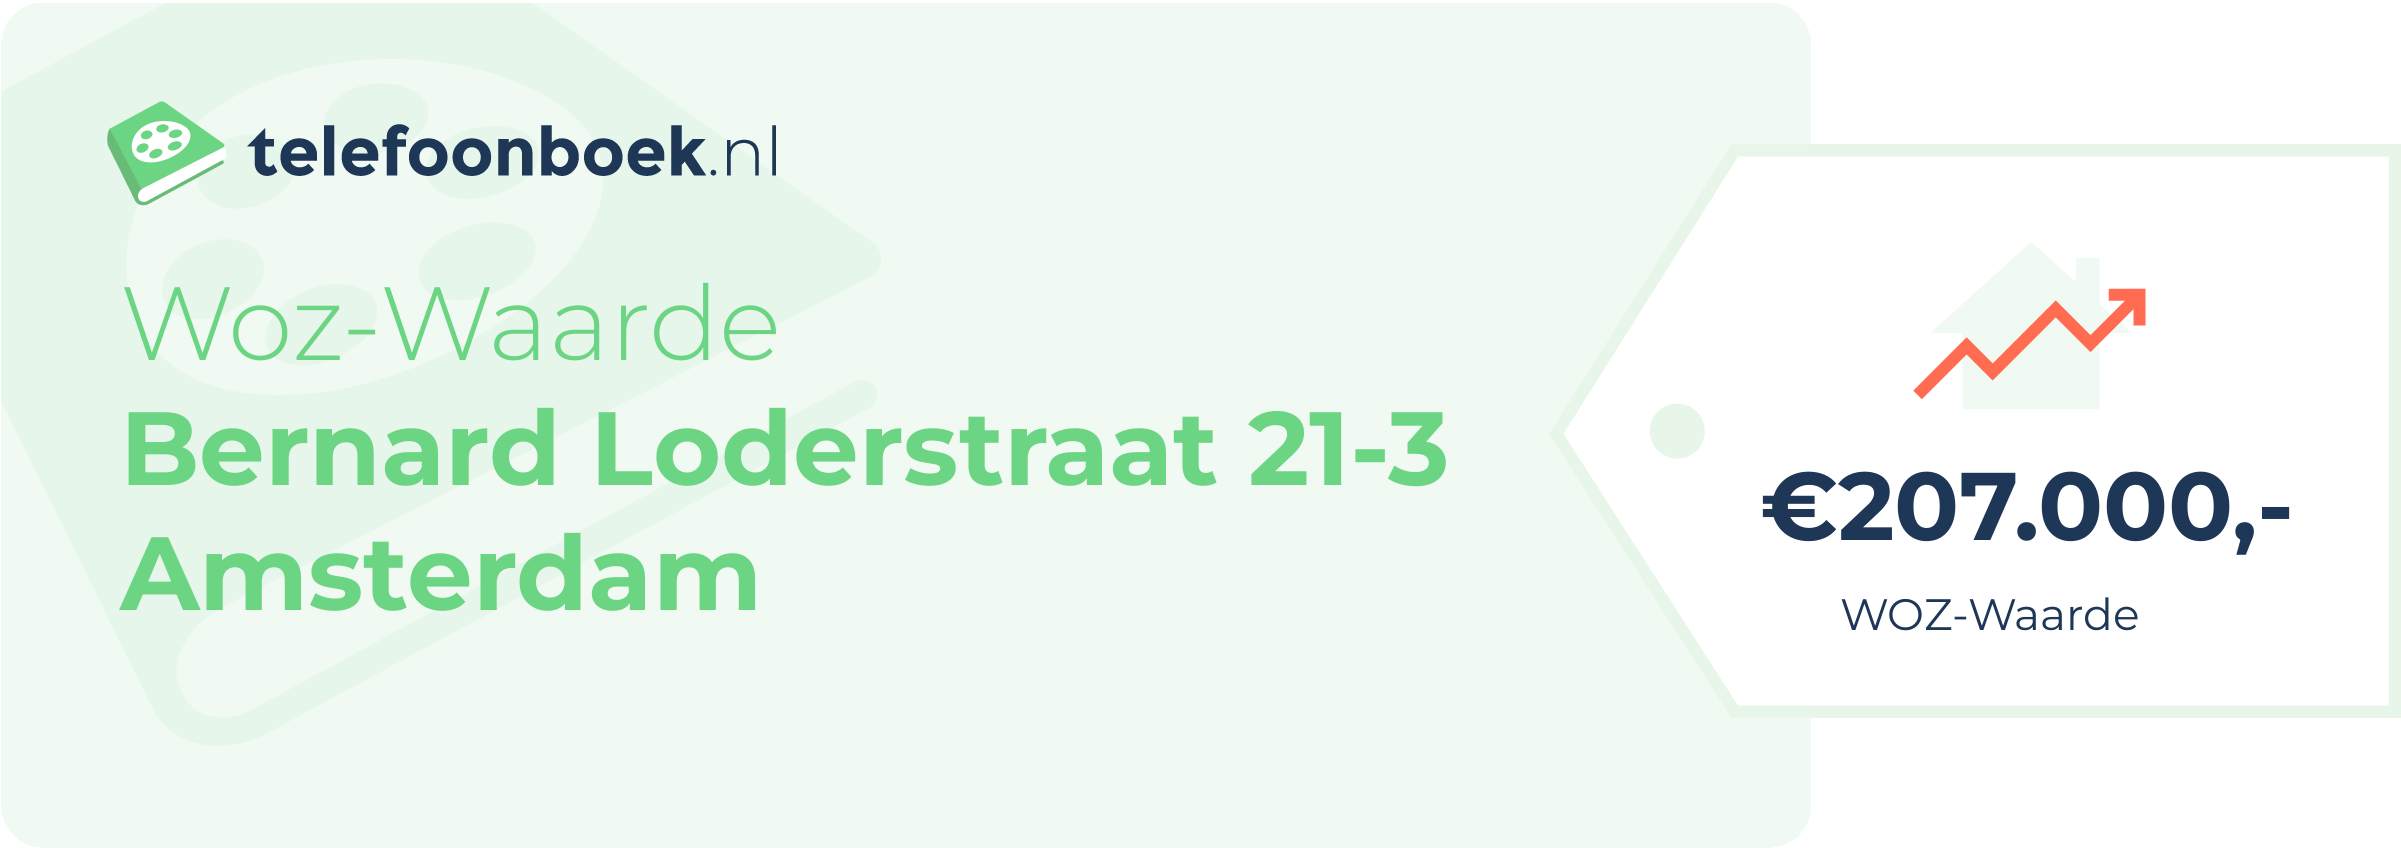 WOZ-waarde Bernard Loderstraat 21-3 Amsterdam